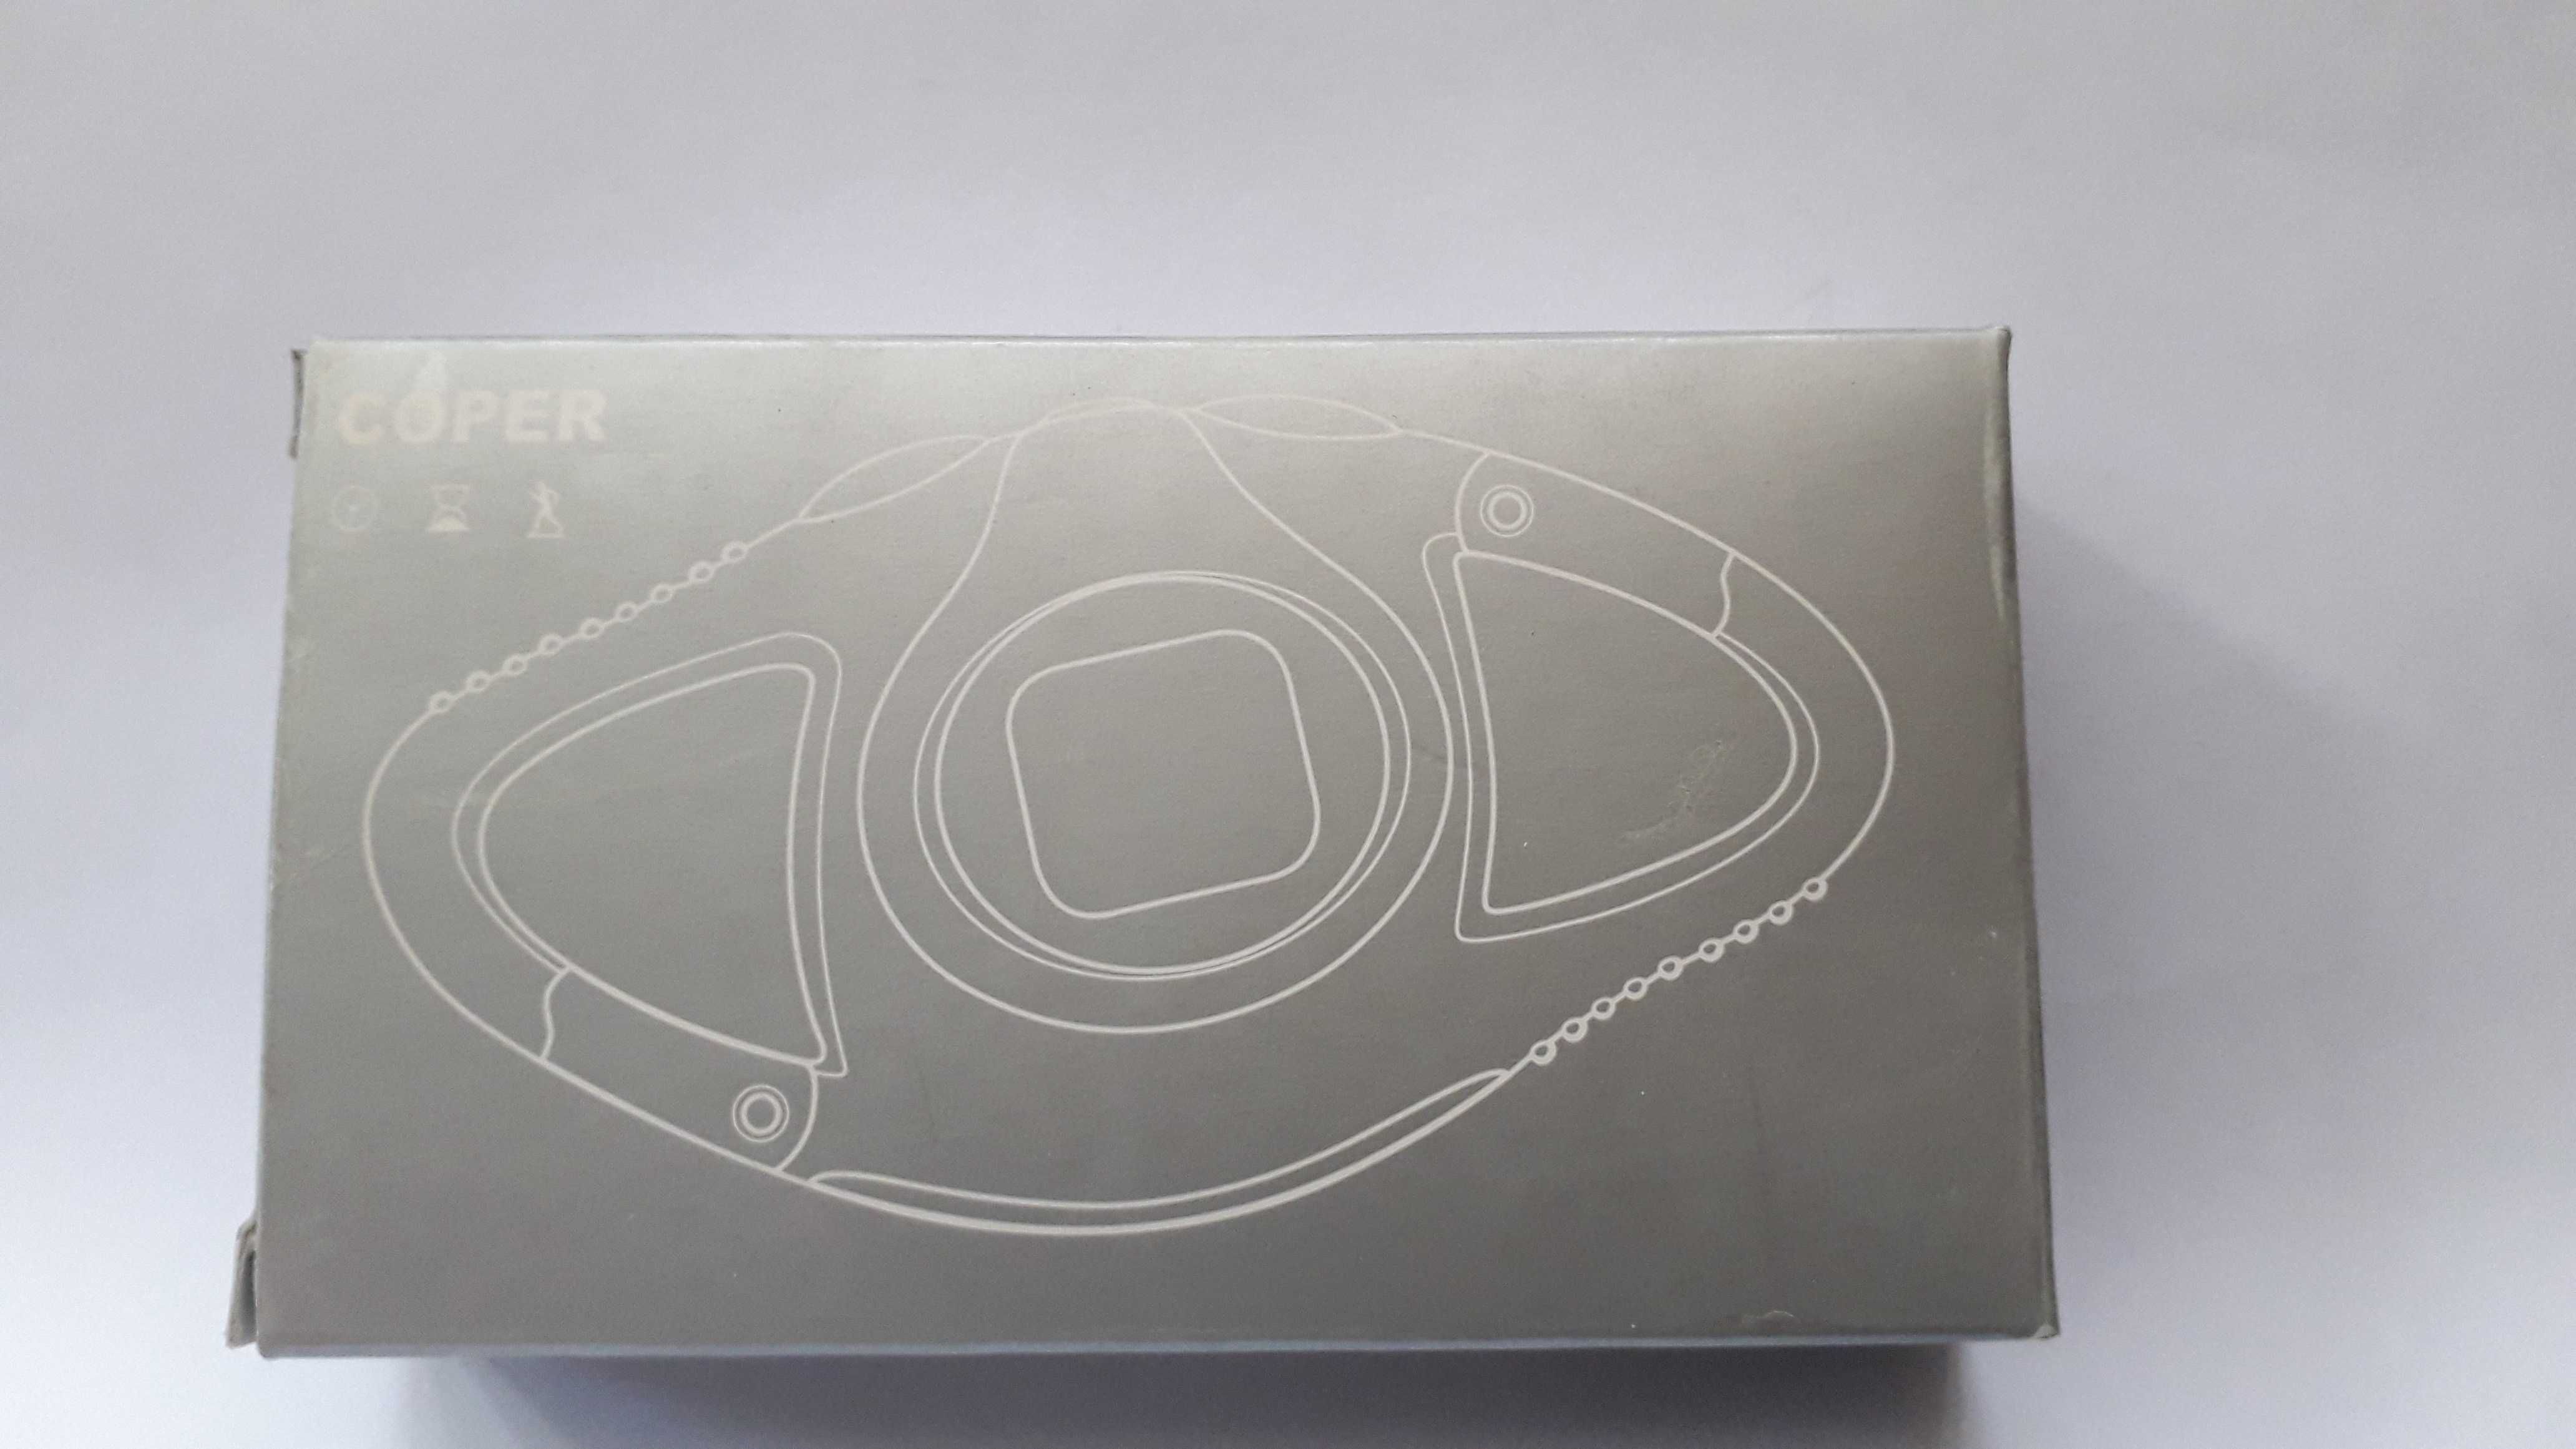 крачкомер дигитален марка  Coper с щипка, патентован PSL дизайн